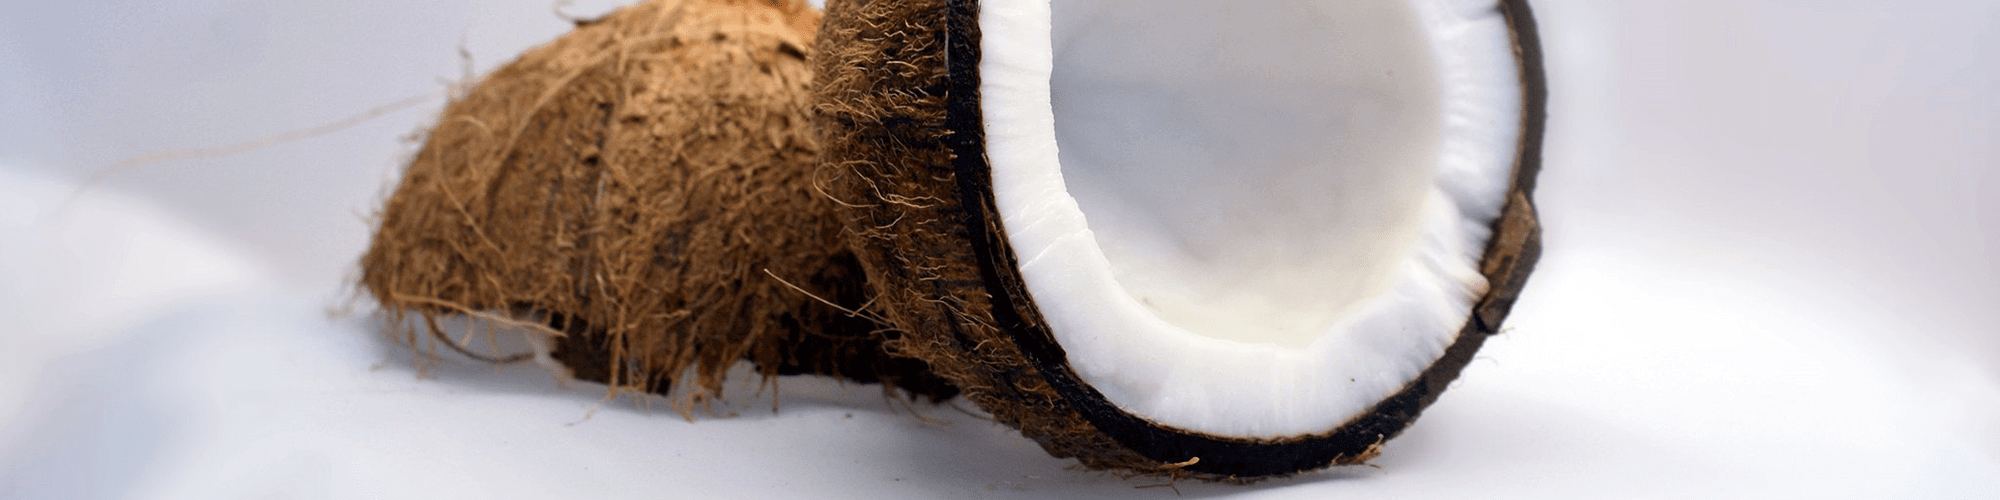 Zdravi napitak s kokosom i aronijom